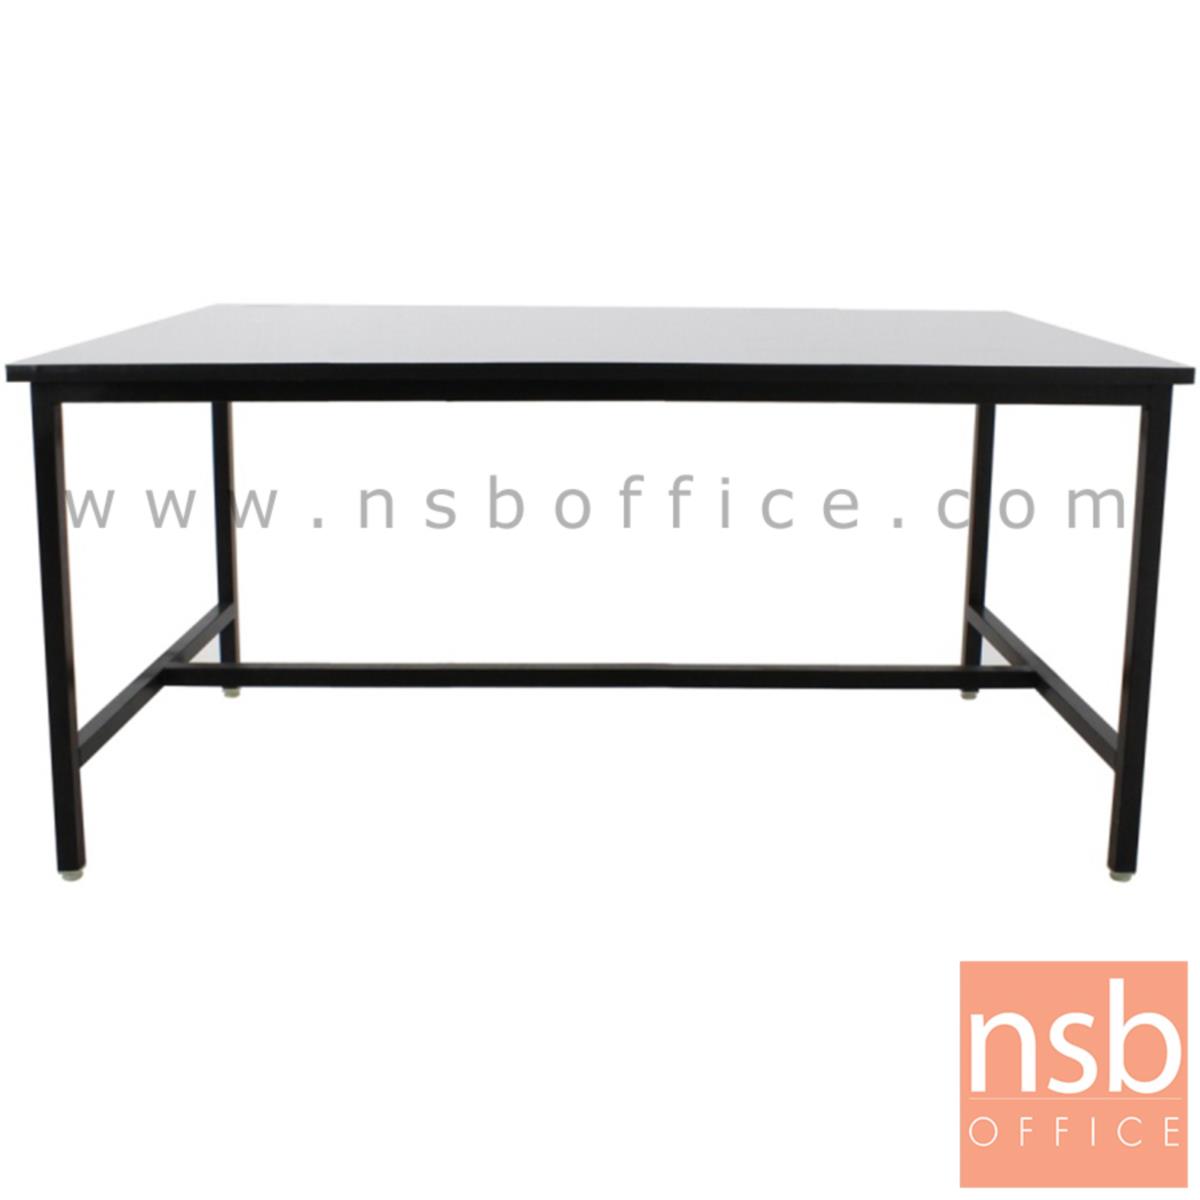 โต๊ะหน้าโฟเมก้าขาว  รุ่น MECKLENBURG (เมคเคลนบวร์ก) ขนาด 120W, 150W, 180W cm. โครงขาเหล็กติดตาย